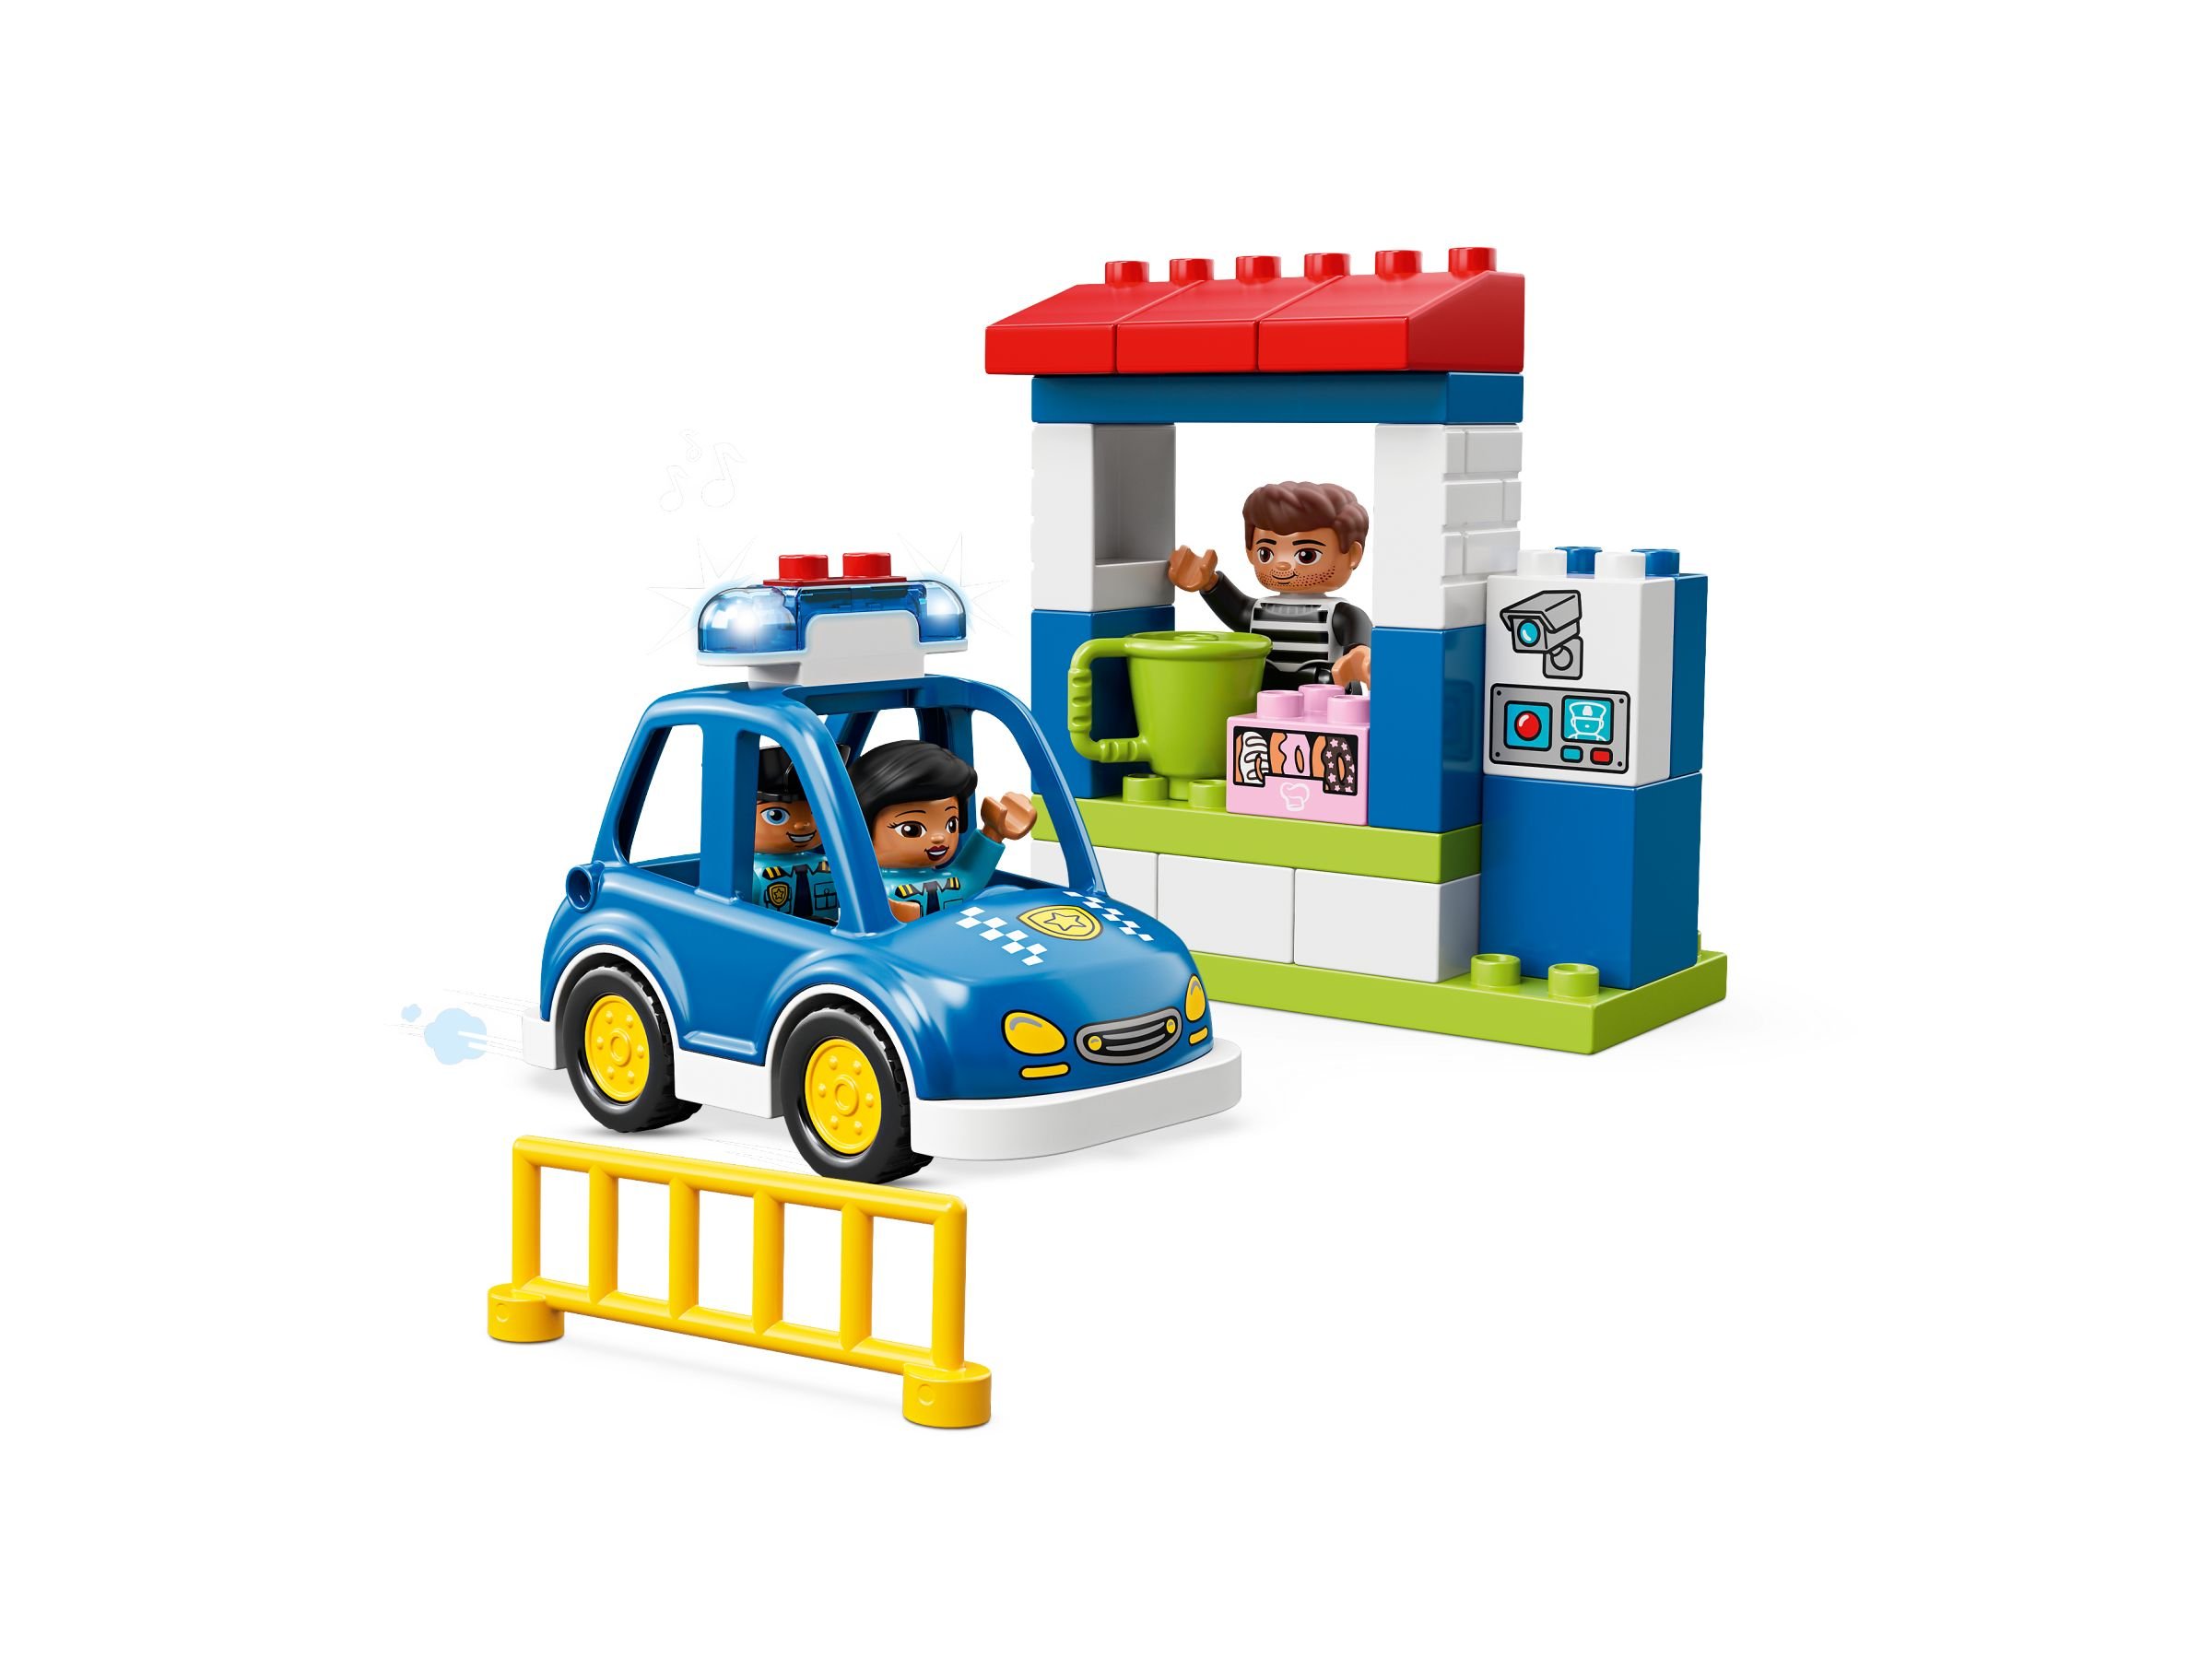 LEGO Duplo 10902 Polizeistation LEGO_10902_alt3.jpg